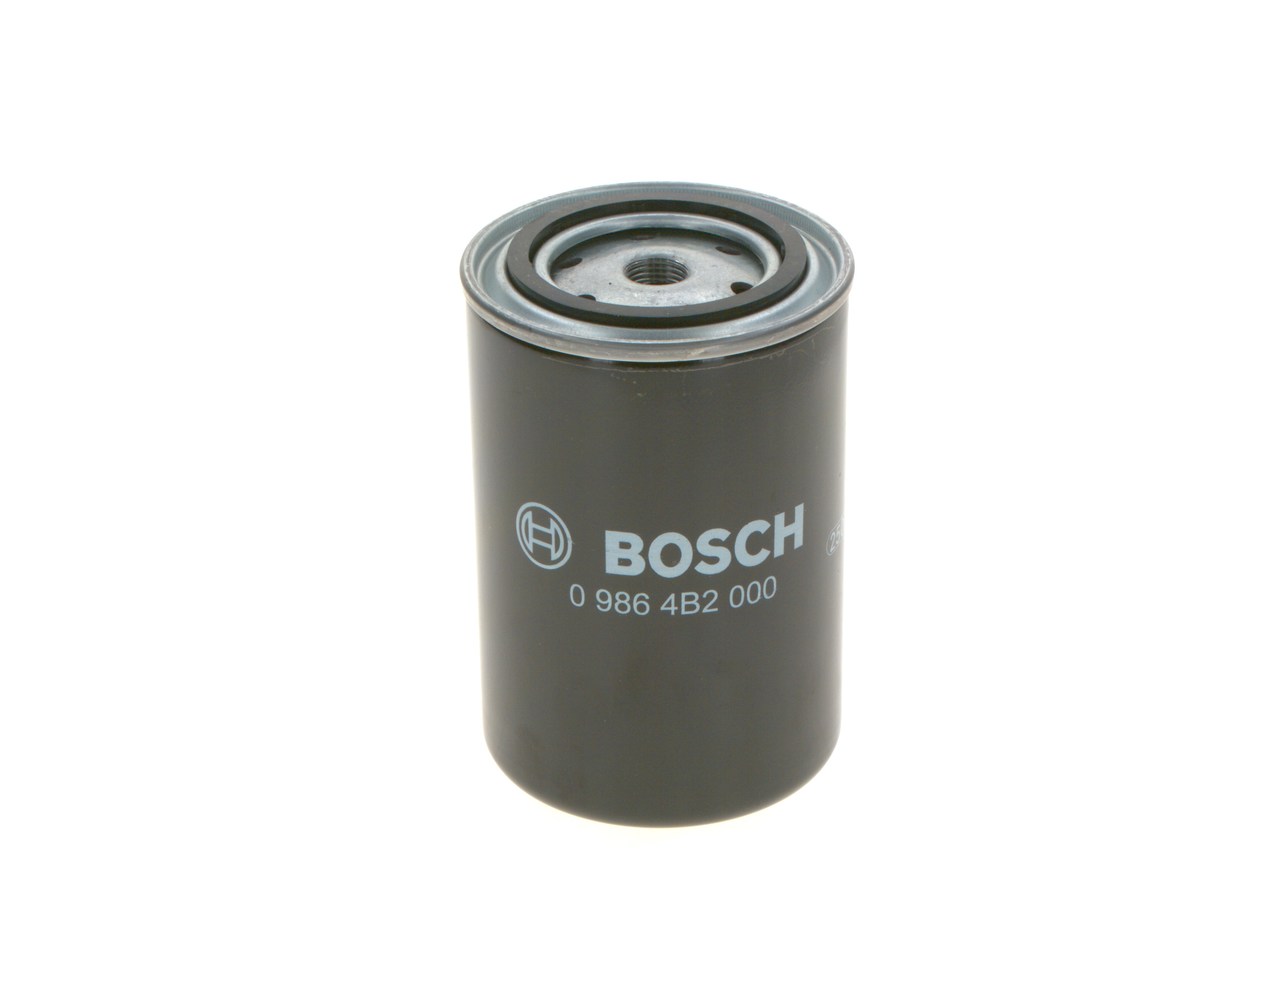 BOSCH 0 986 4B2 000 Fuel filter Spin-on Filter